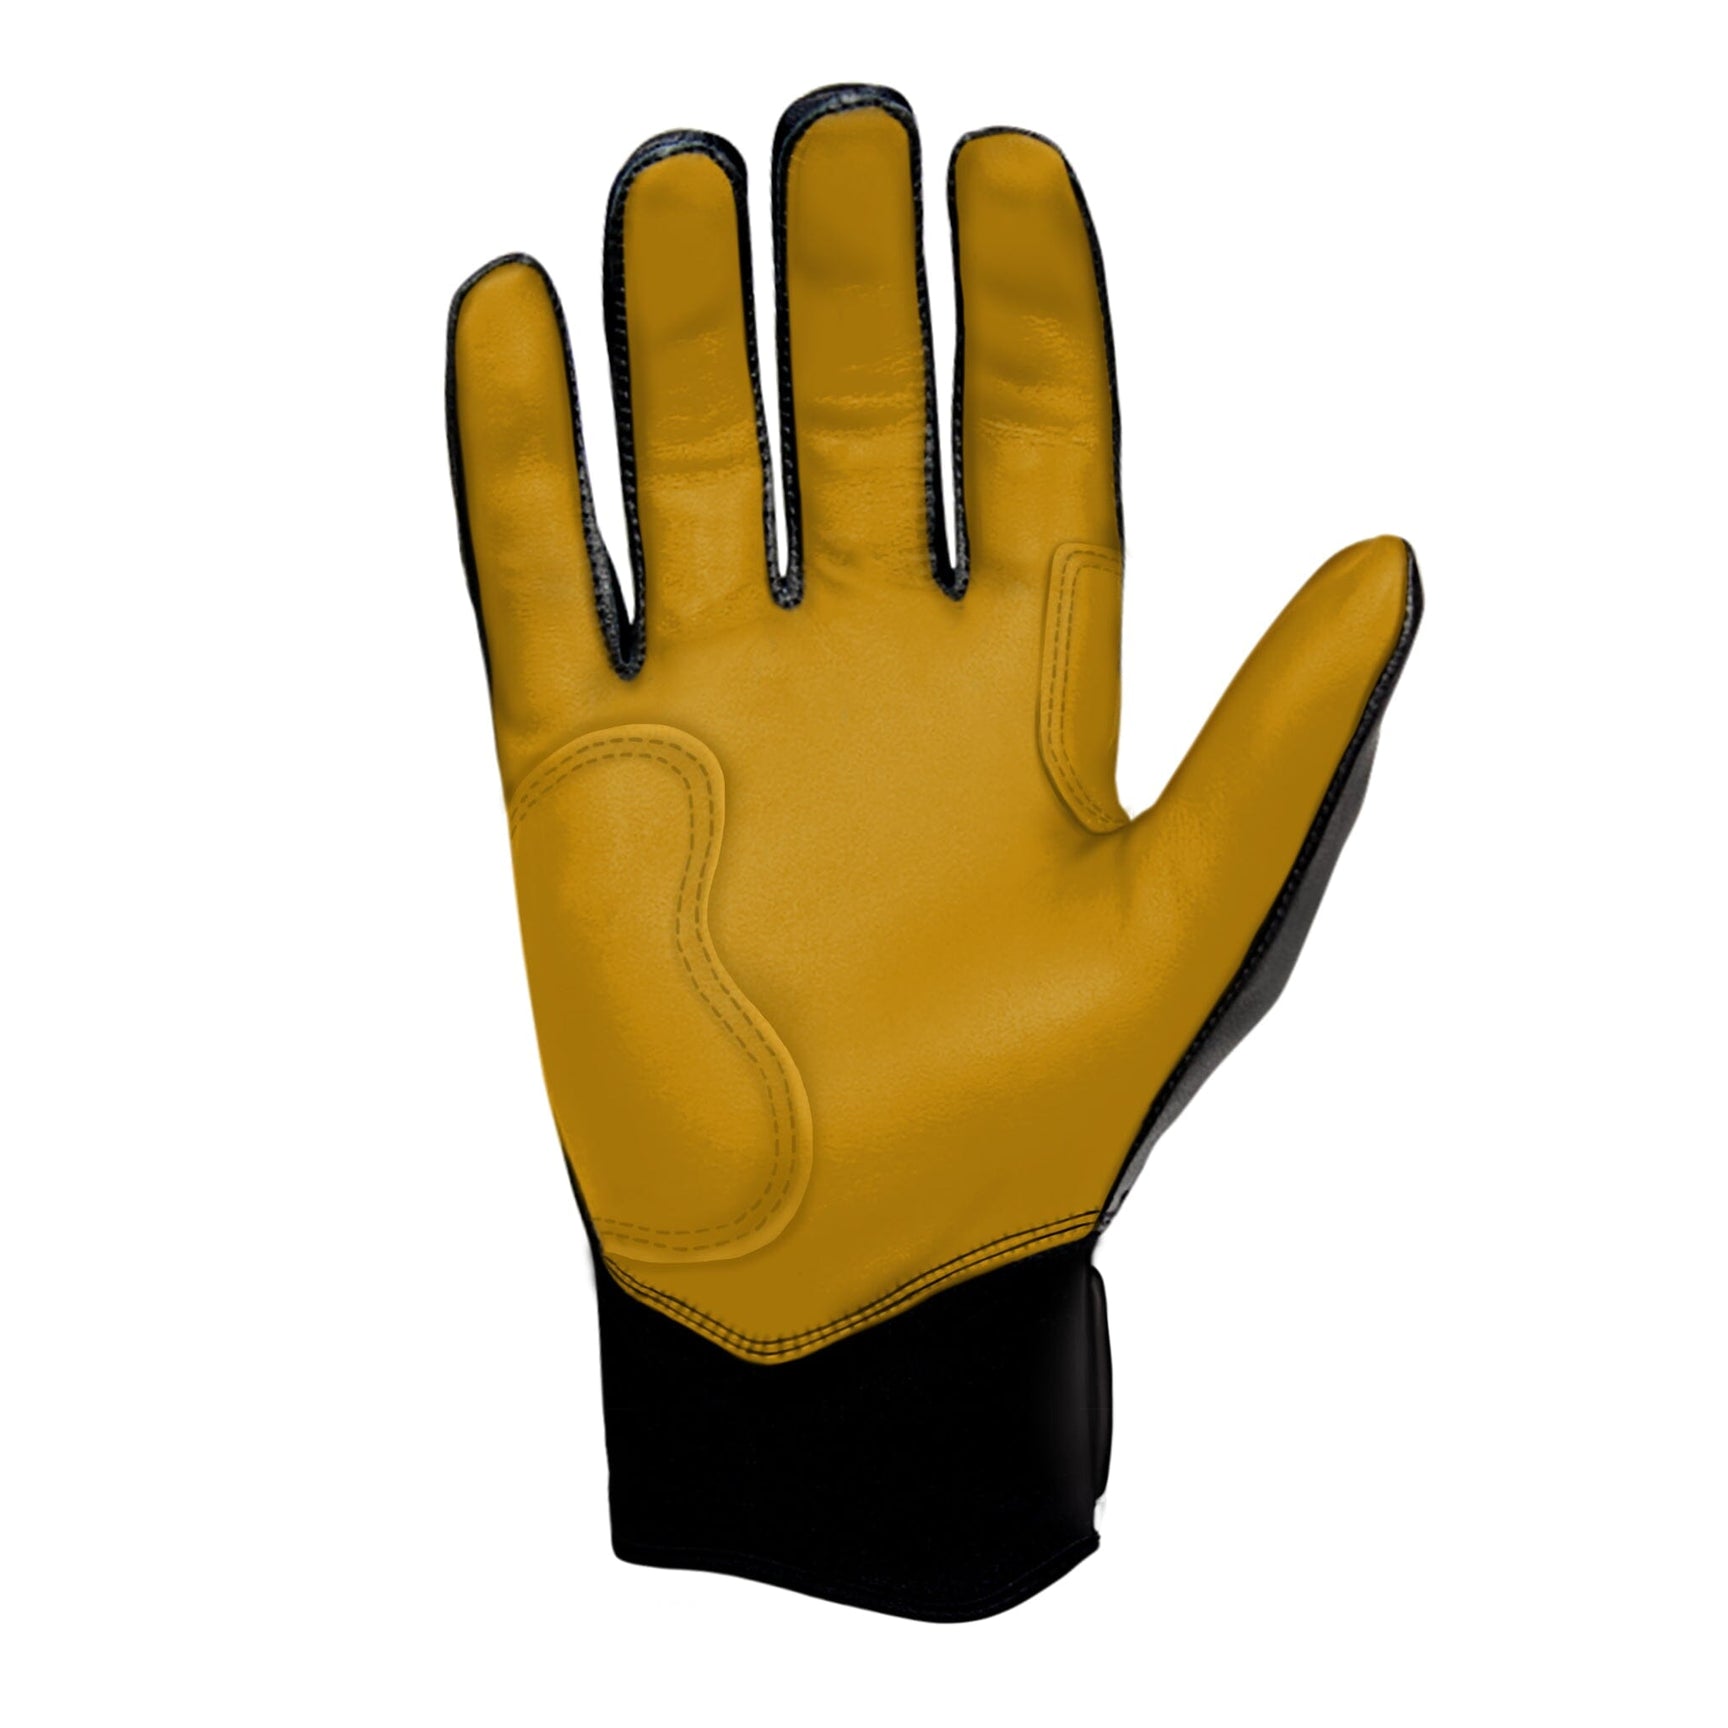 Premium Deerskin Gloves Yellow, Handmade in the USA